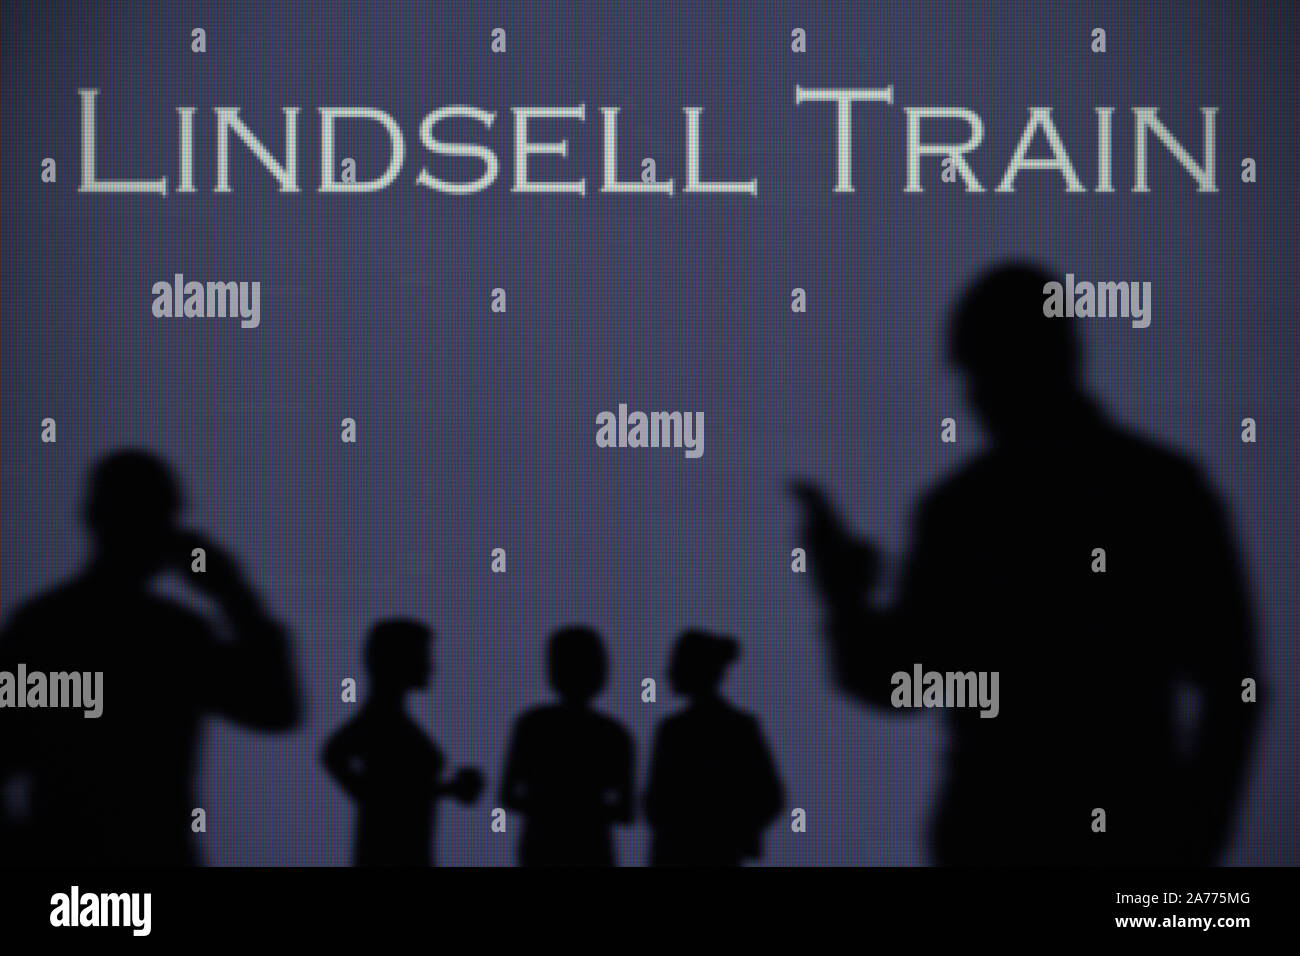 Il treno di Lindsell logo è visibile su uno schermo a LED in background mentre si profila una persona utilizza uno smartphone (solo uso editoriale) Foto Stock